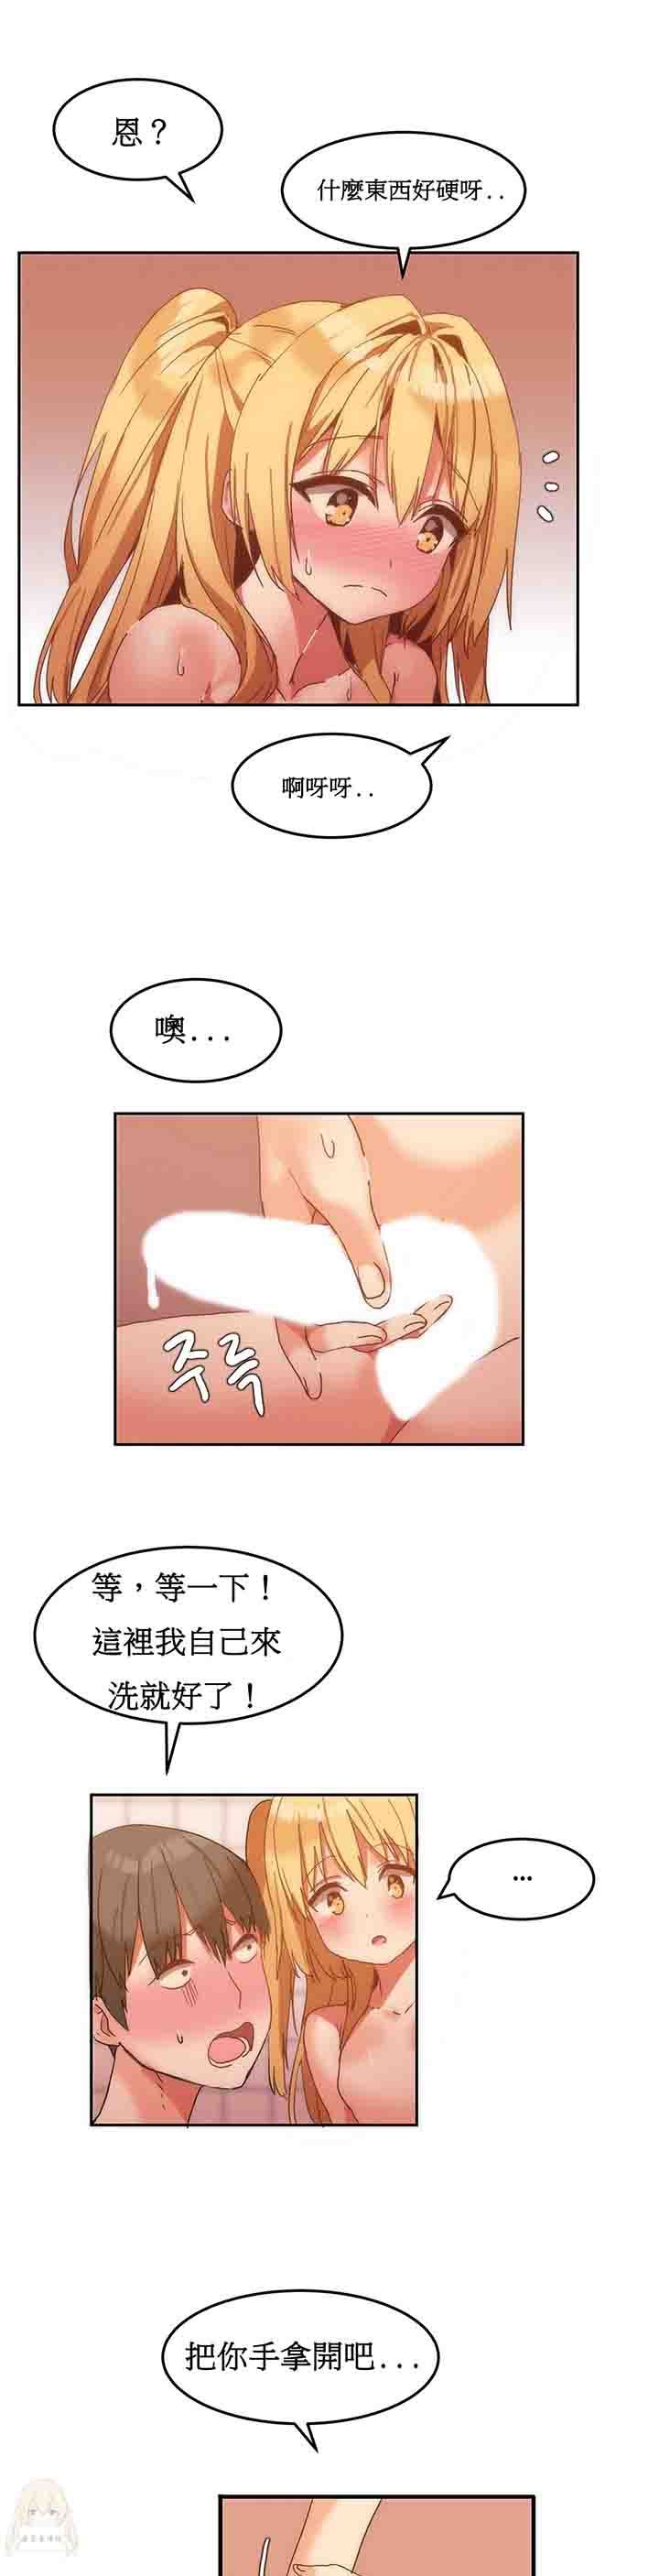 韩国污漫画 寄宿公寓-陰氣之洞 第8话 16